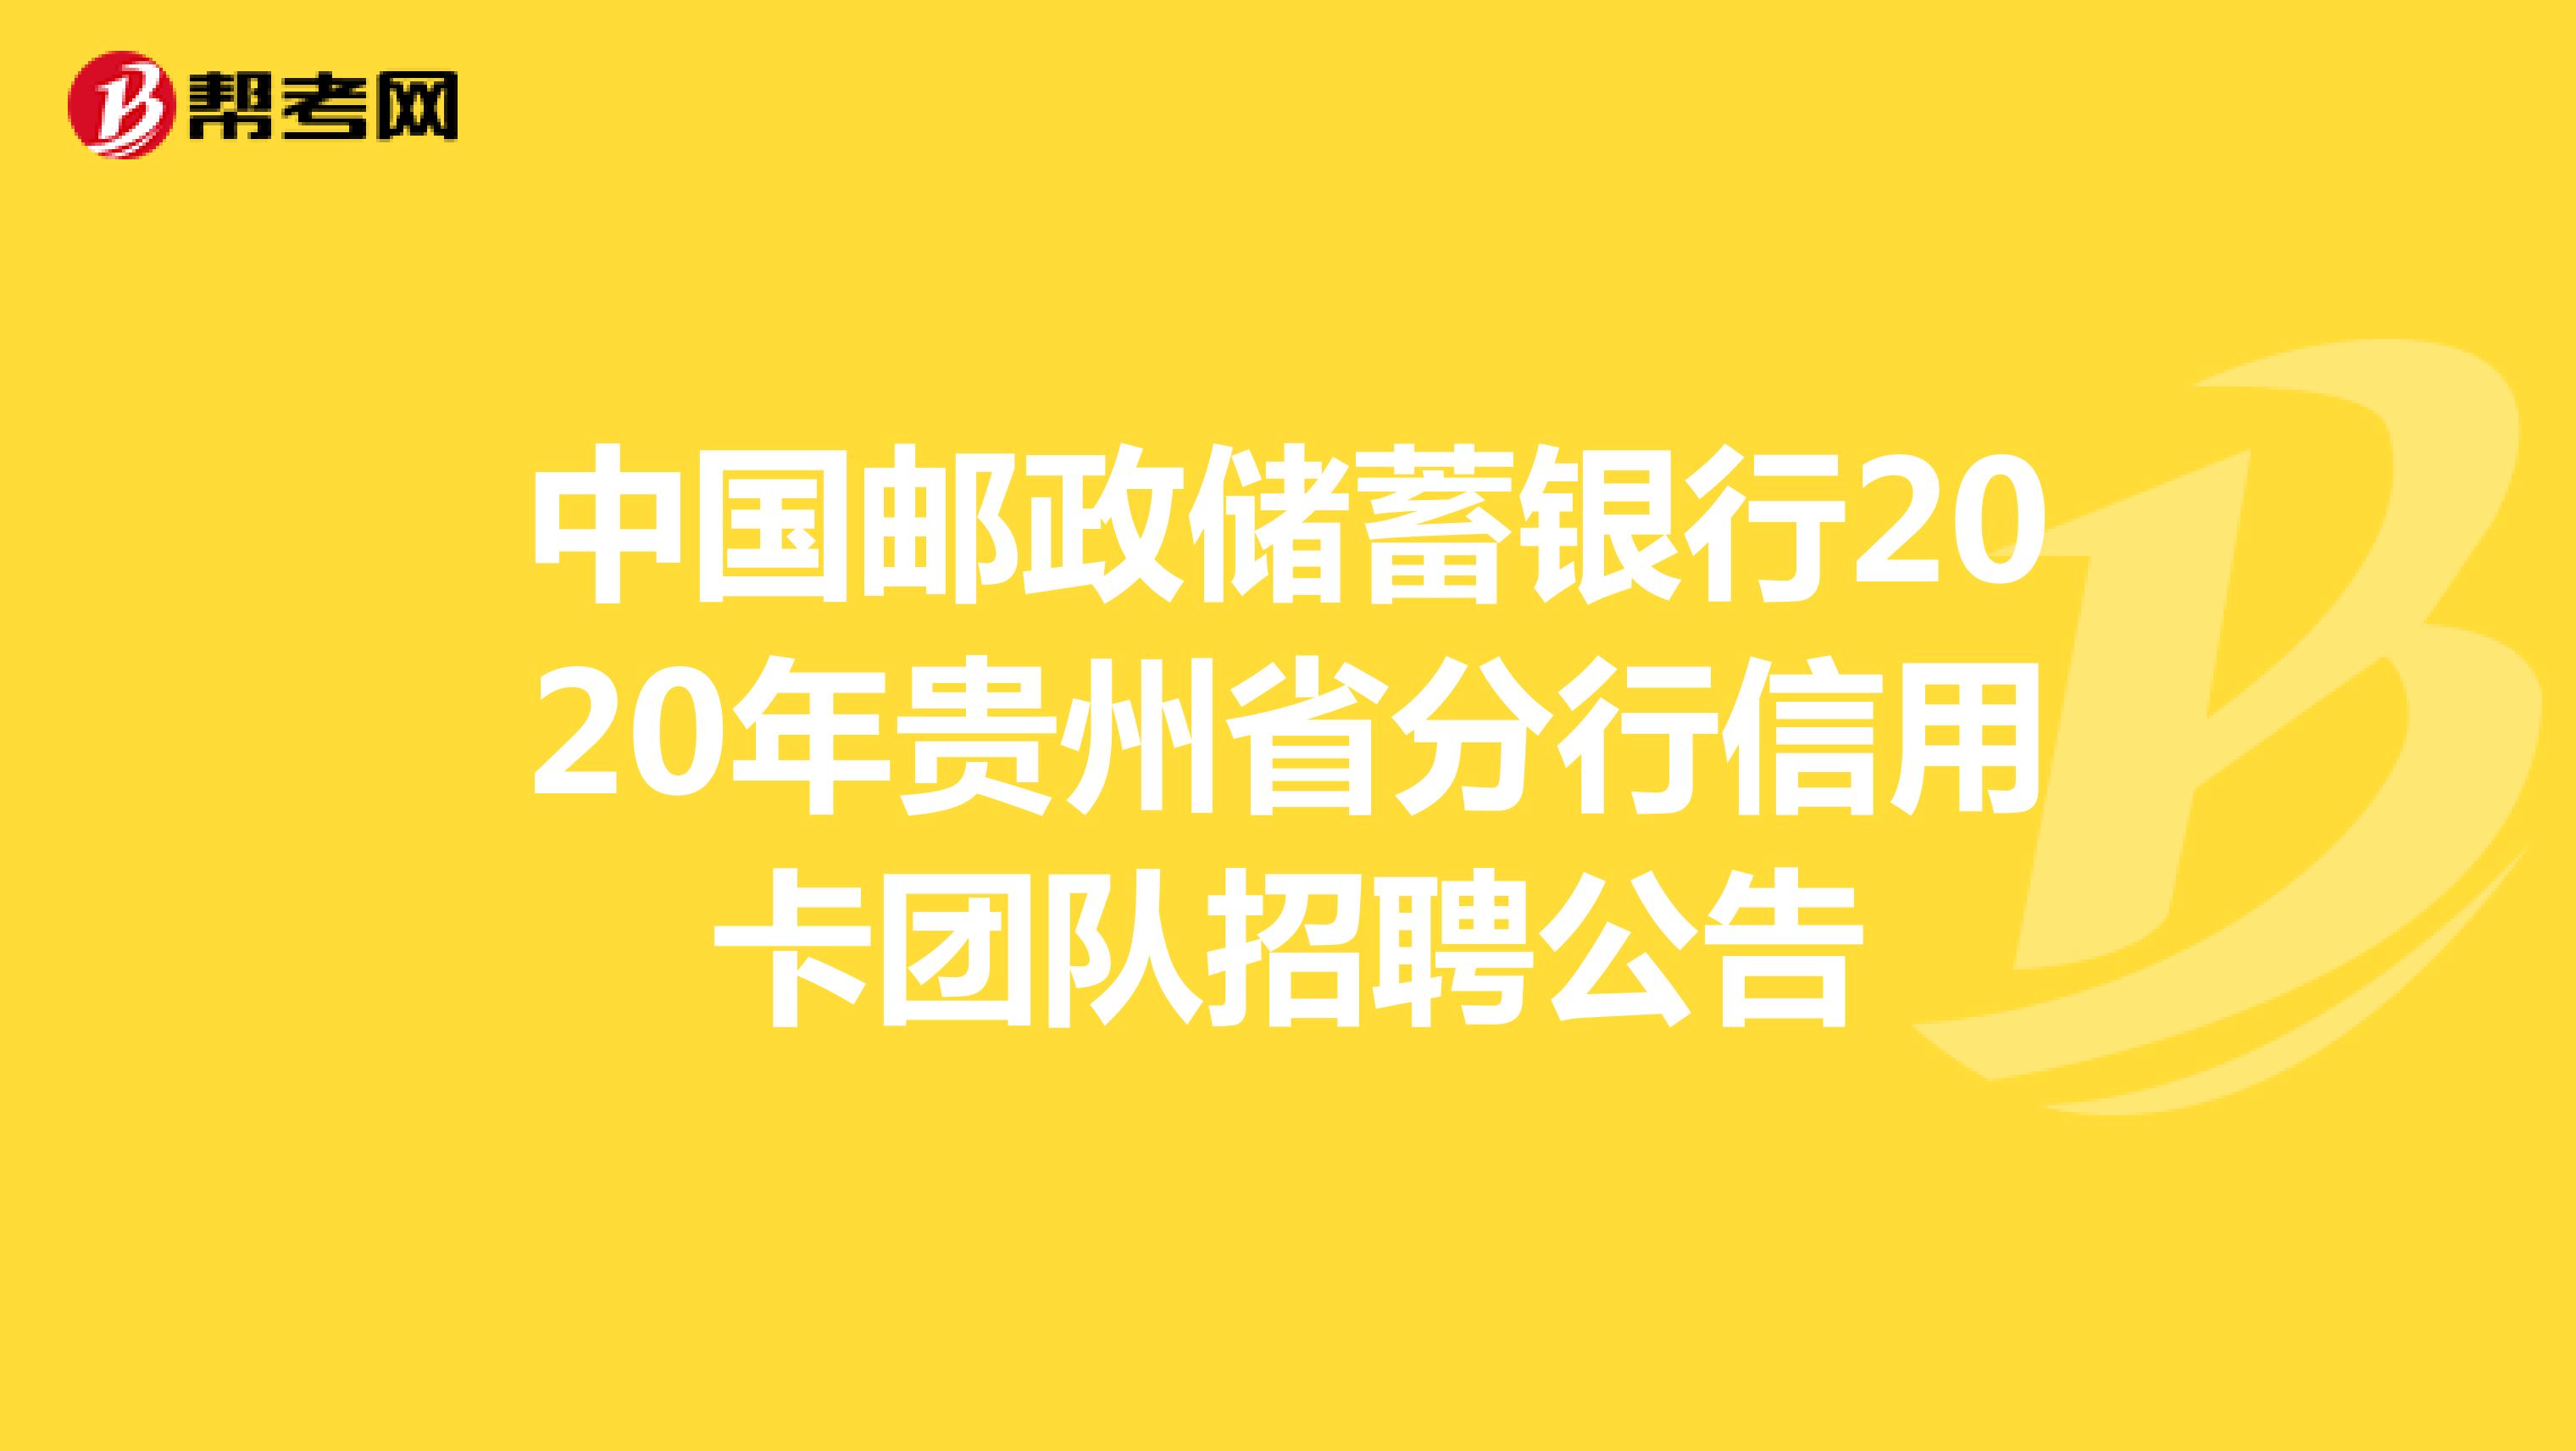 中国邮政储蓄银行2020年贵州省分行信用卡团队招聘公告